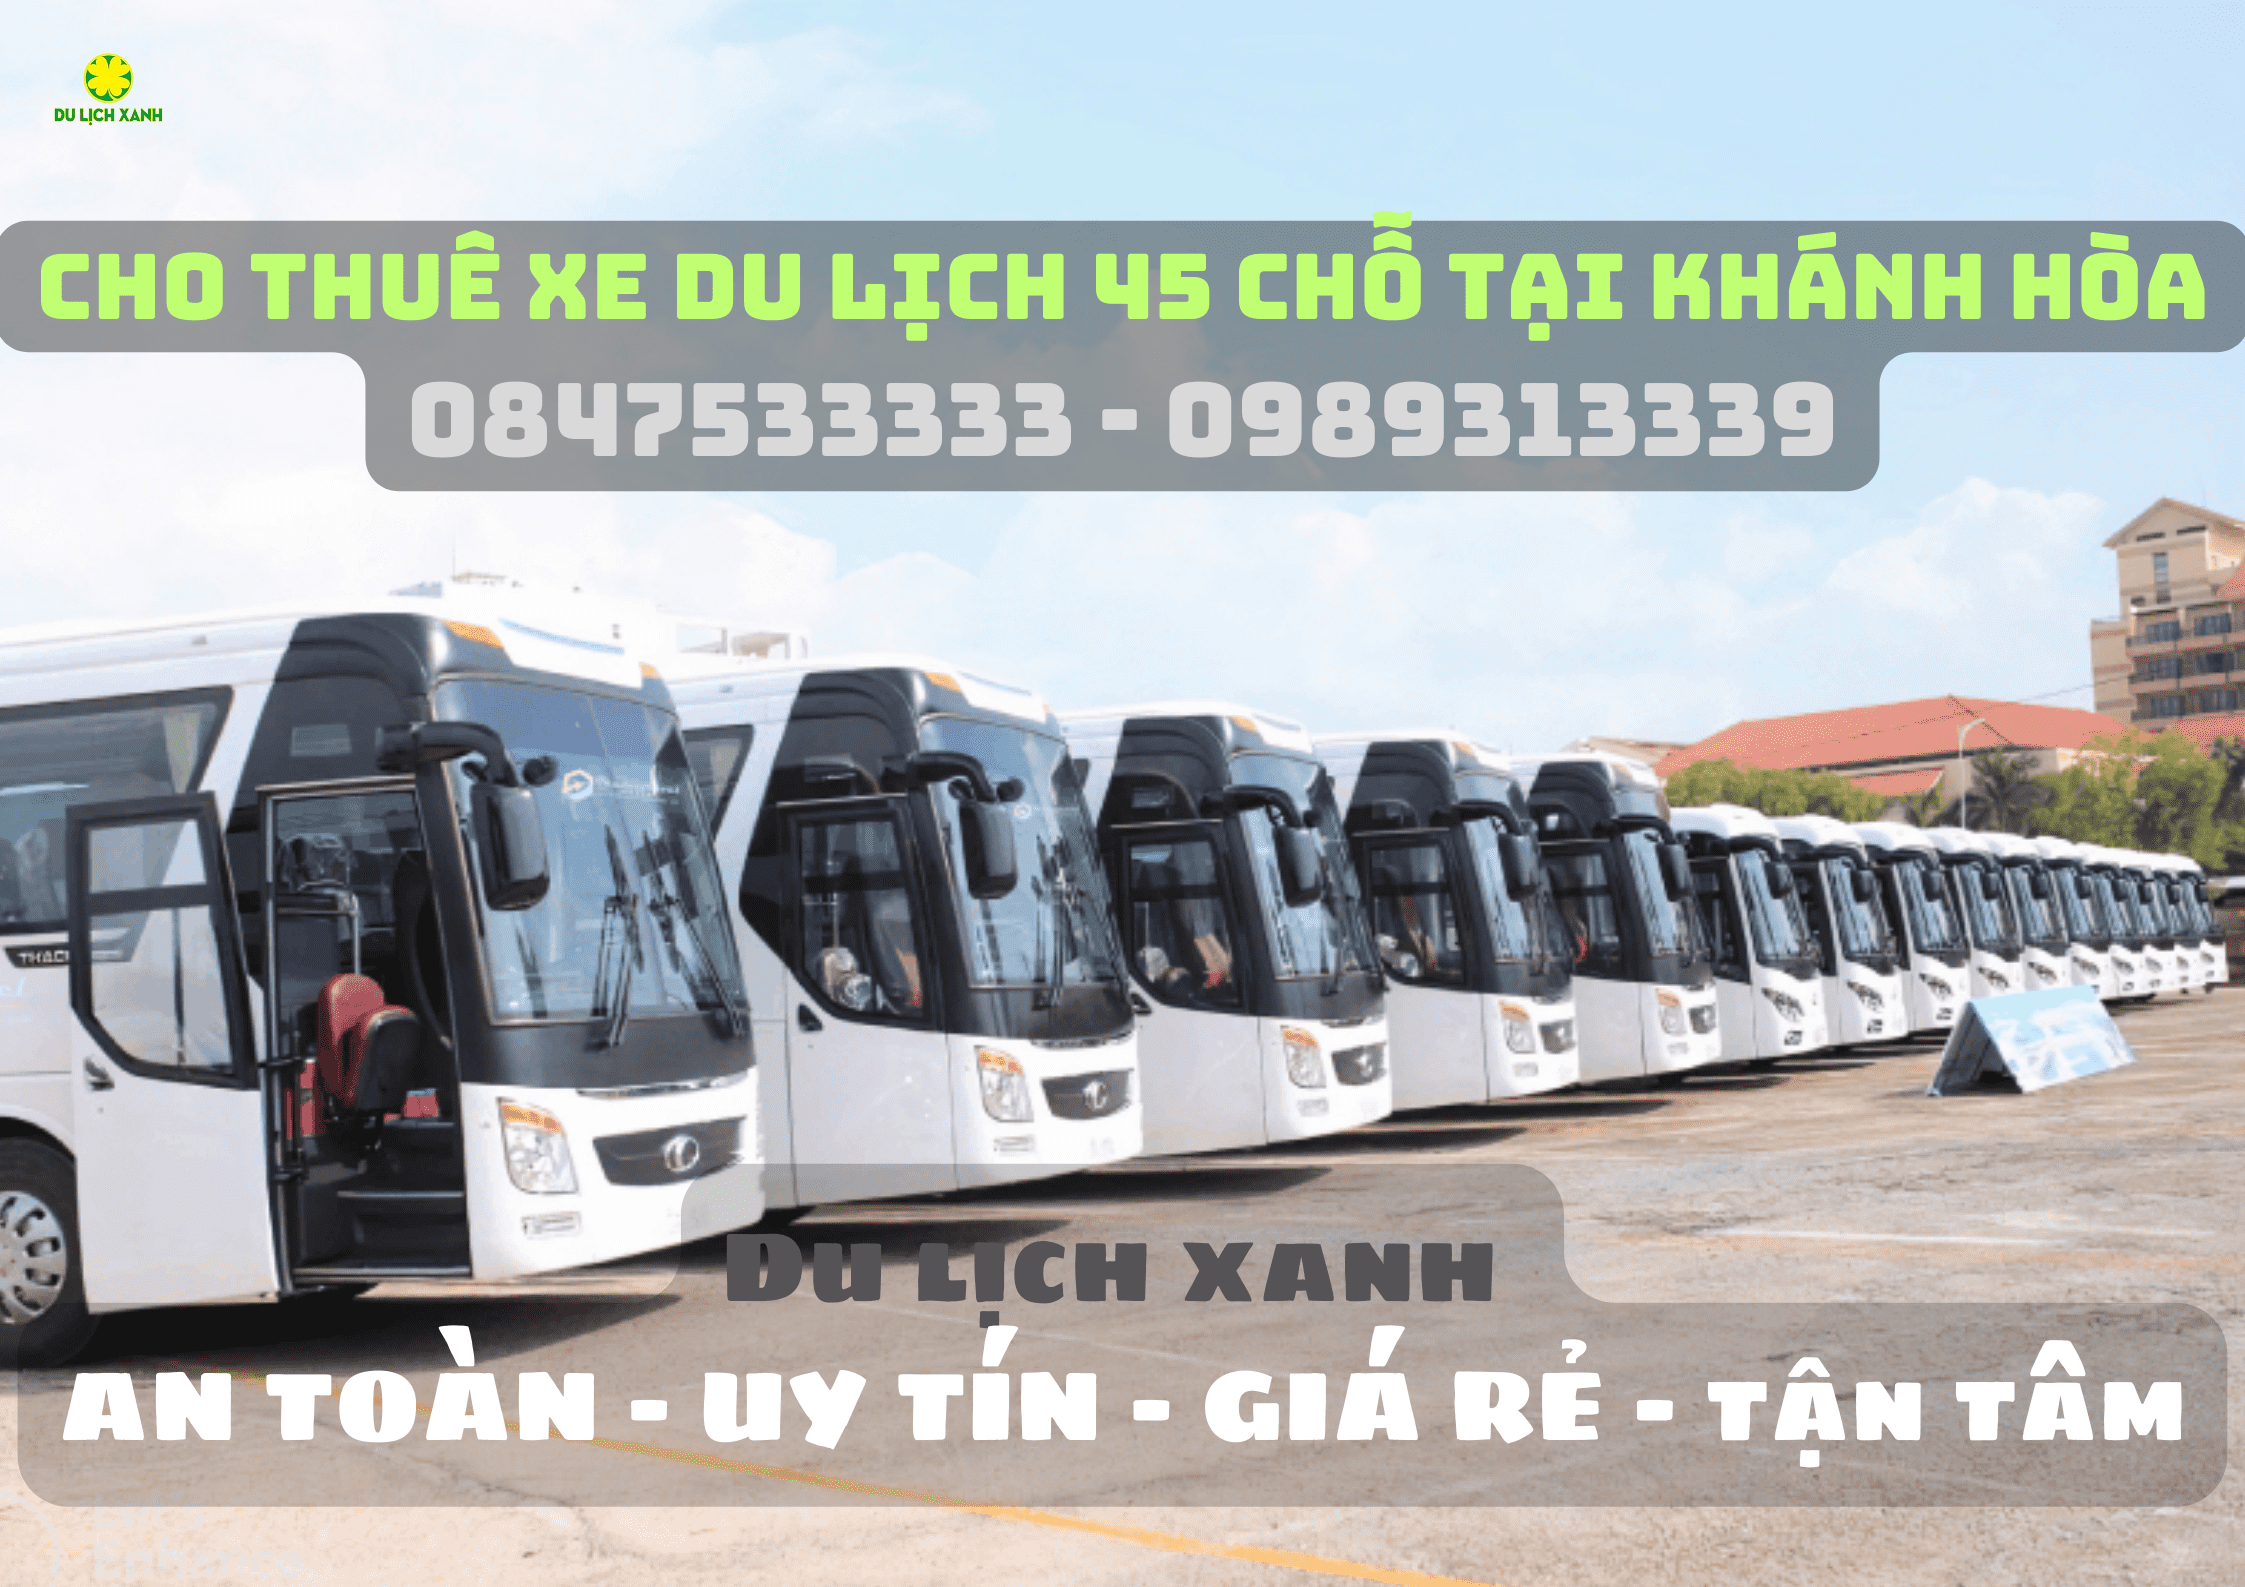 Dịch vụ cho thuê xe du lịch 45 chỗ tại Khánh Hòa